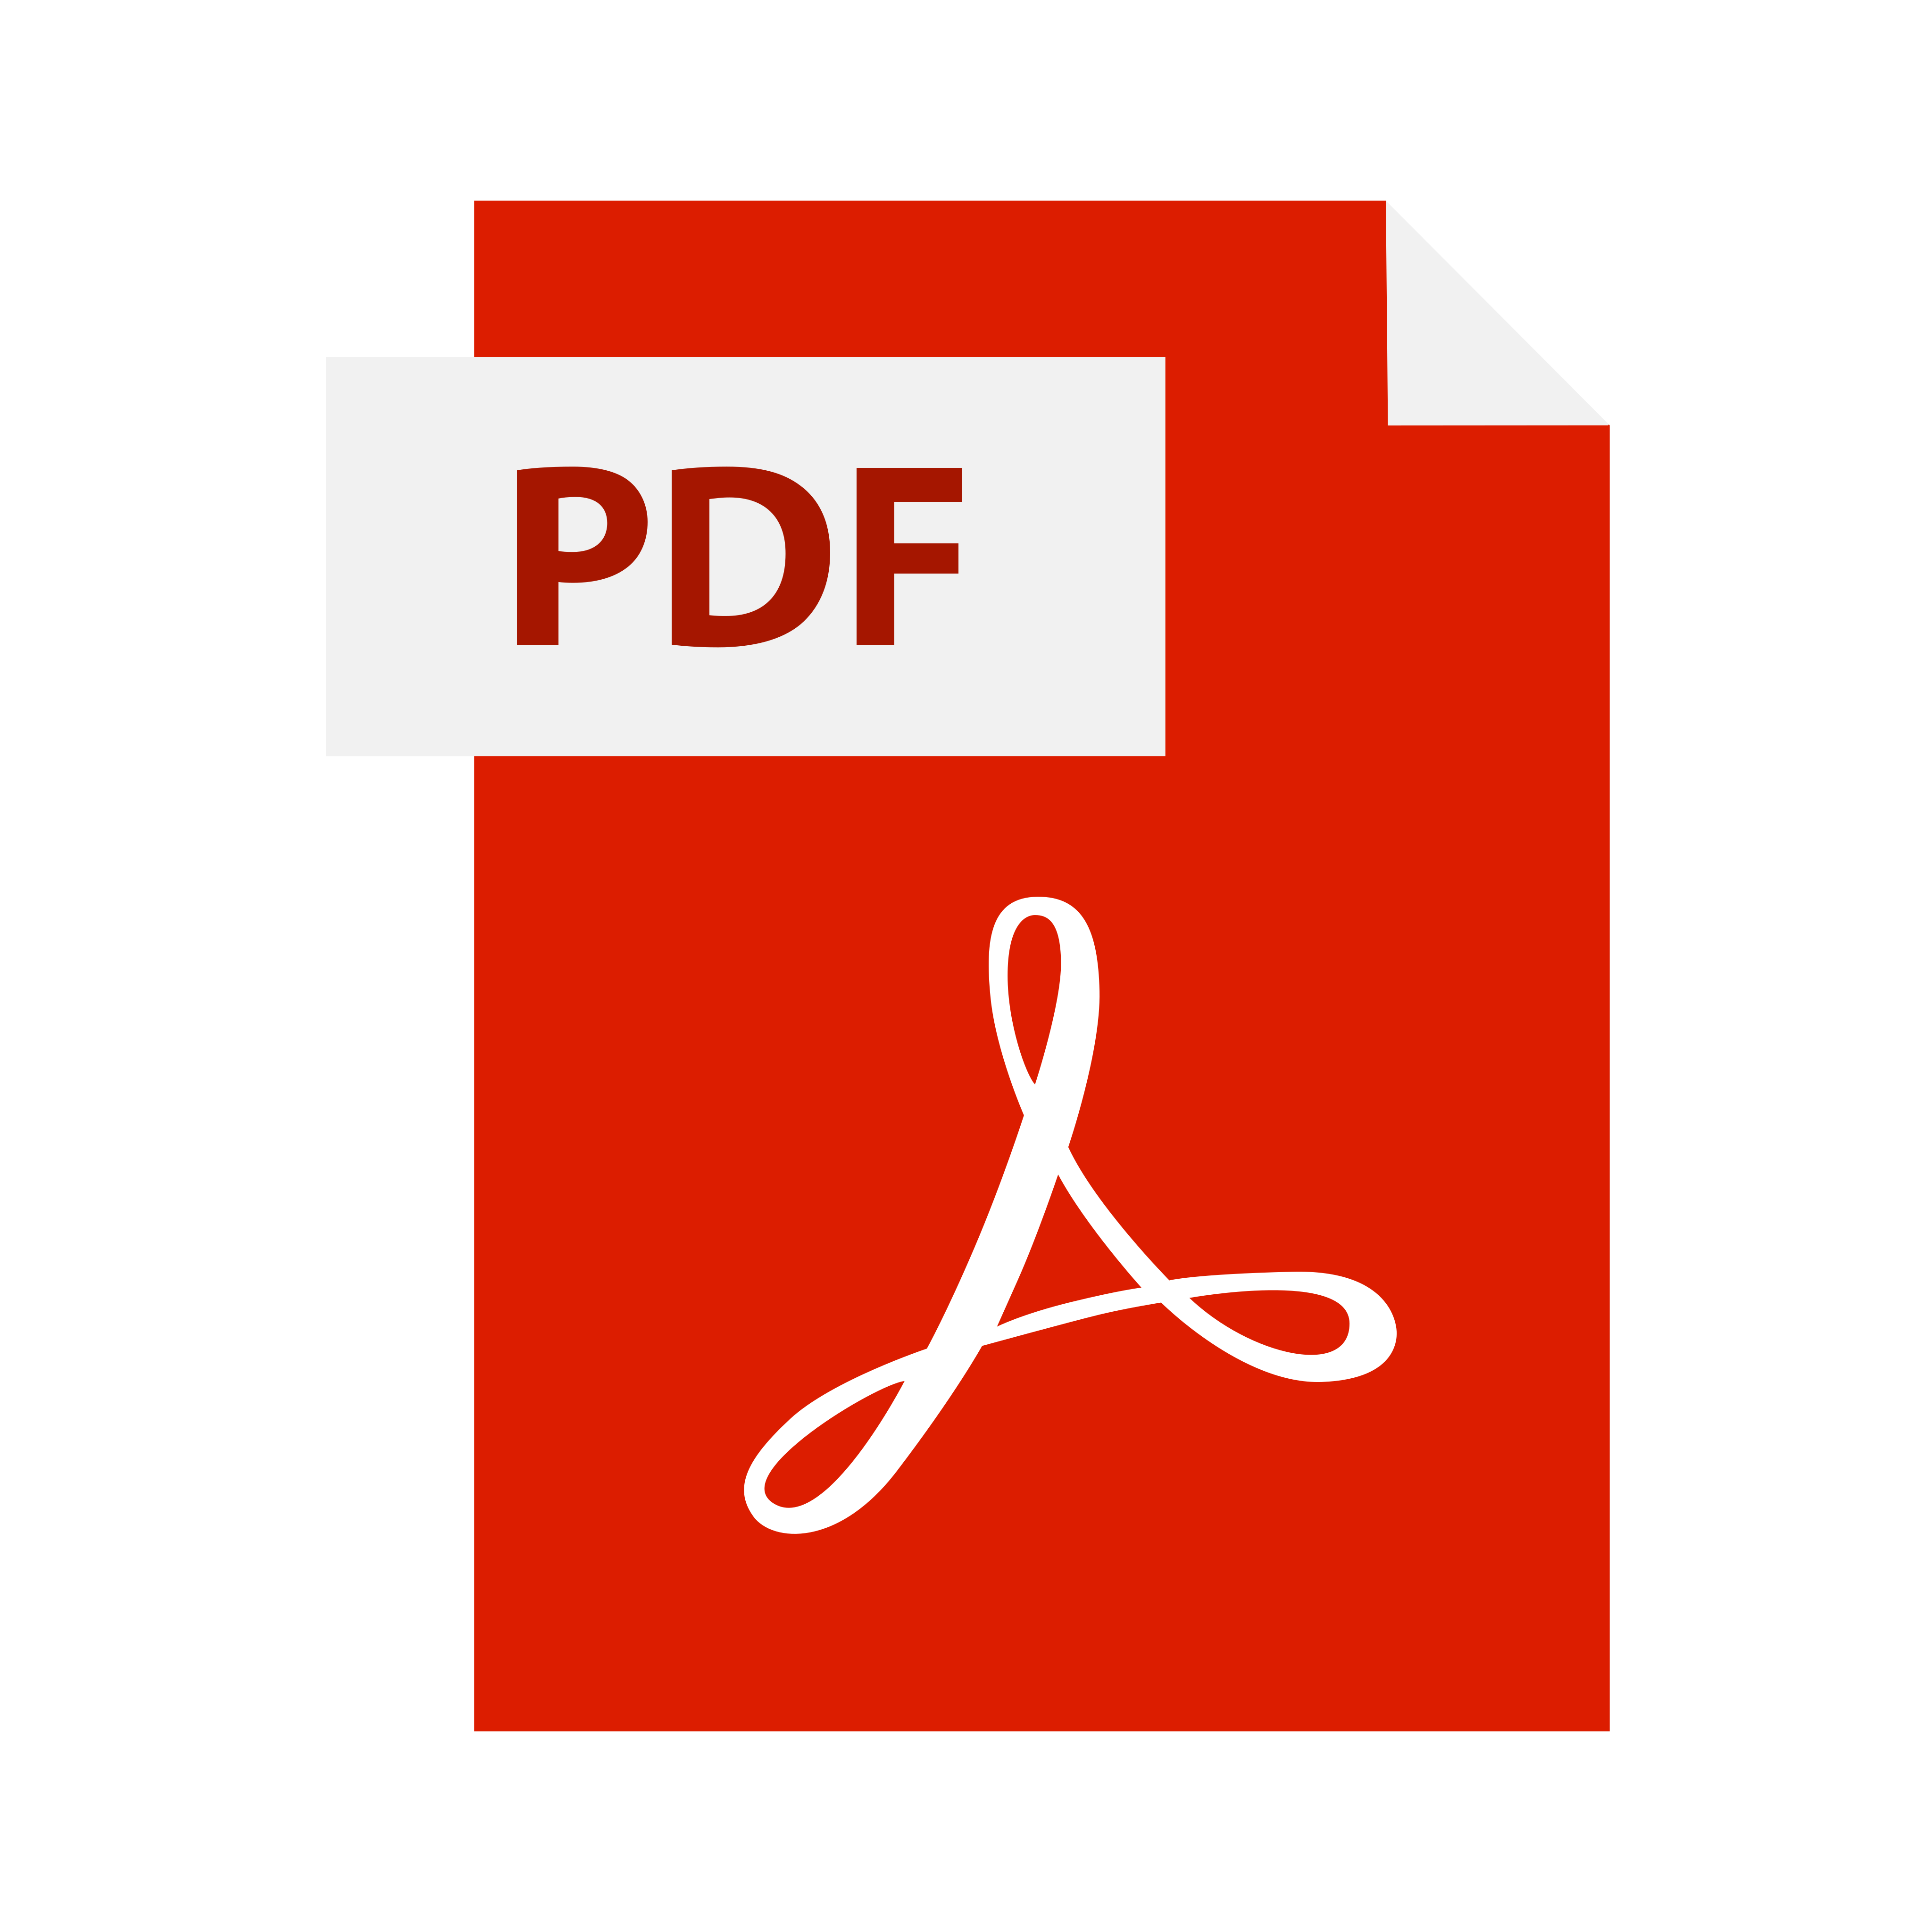 Изображений формат pdf. Логотип pdf. Значок pdf файла. PD логотип. Ярлык pdf.